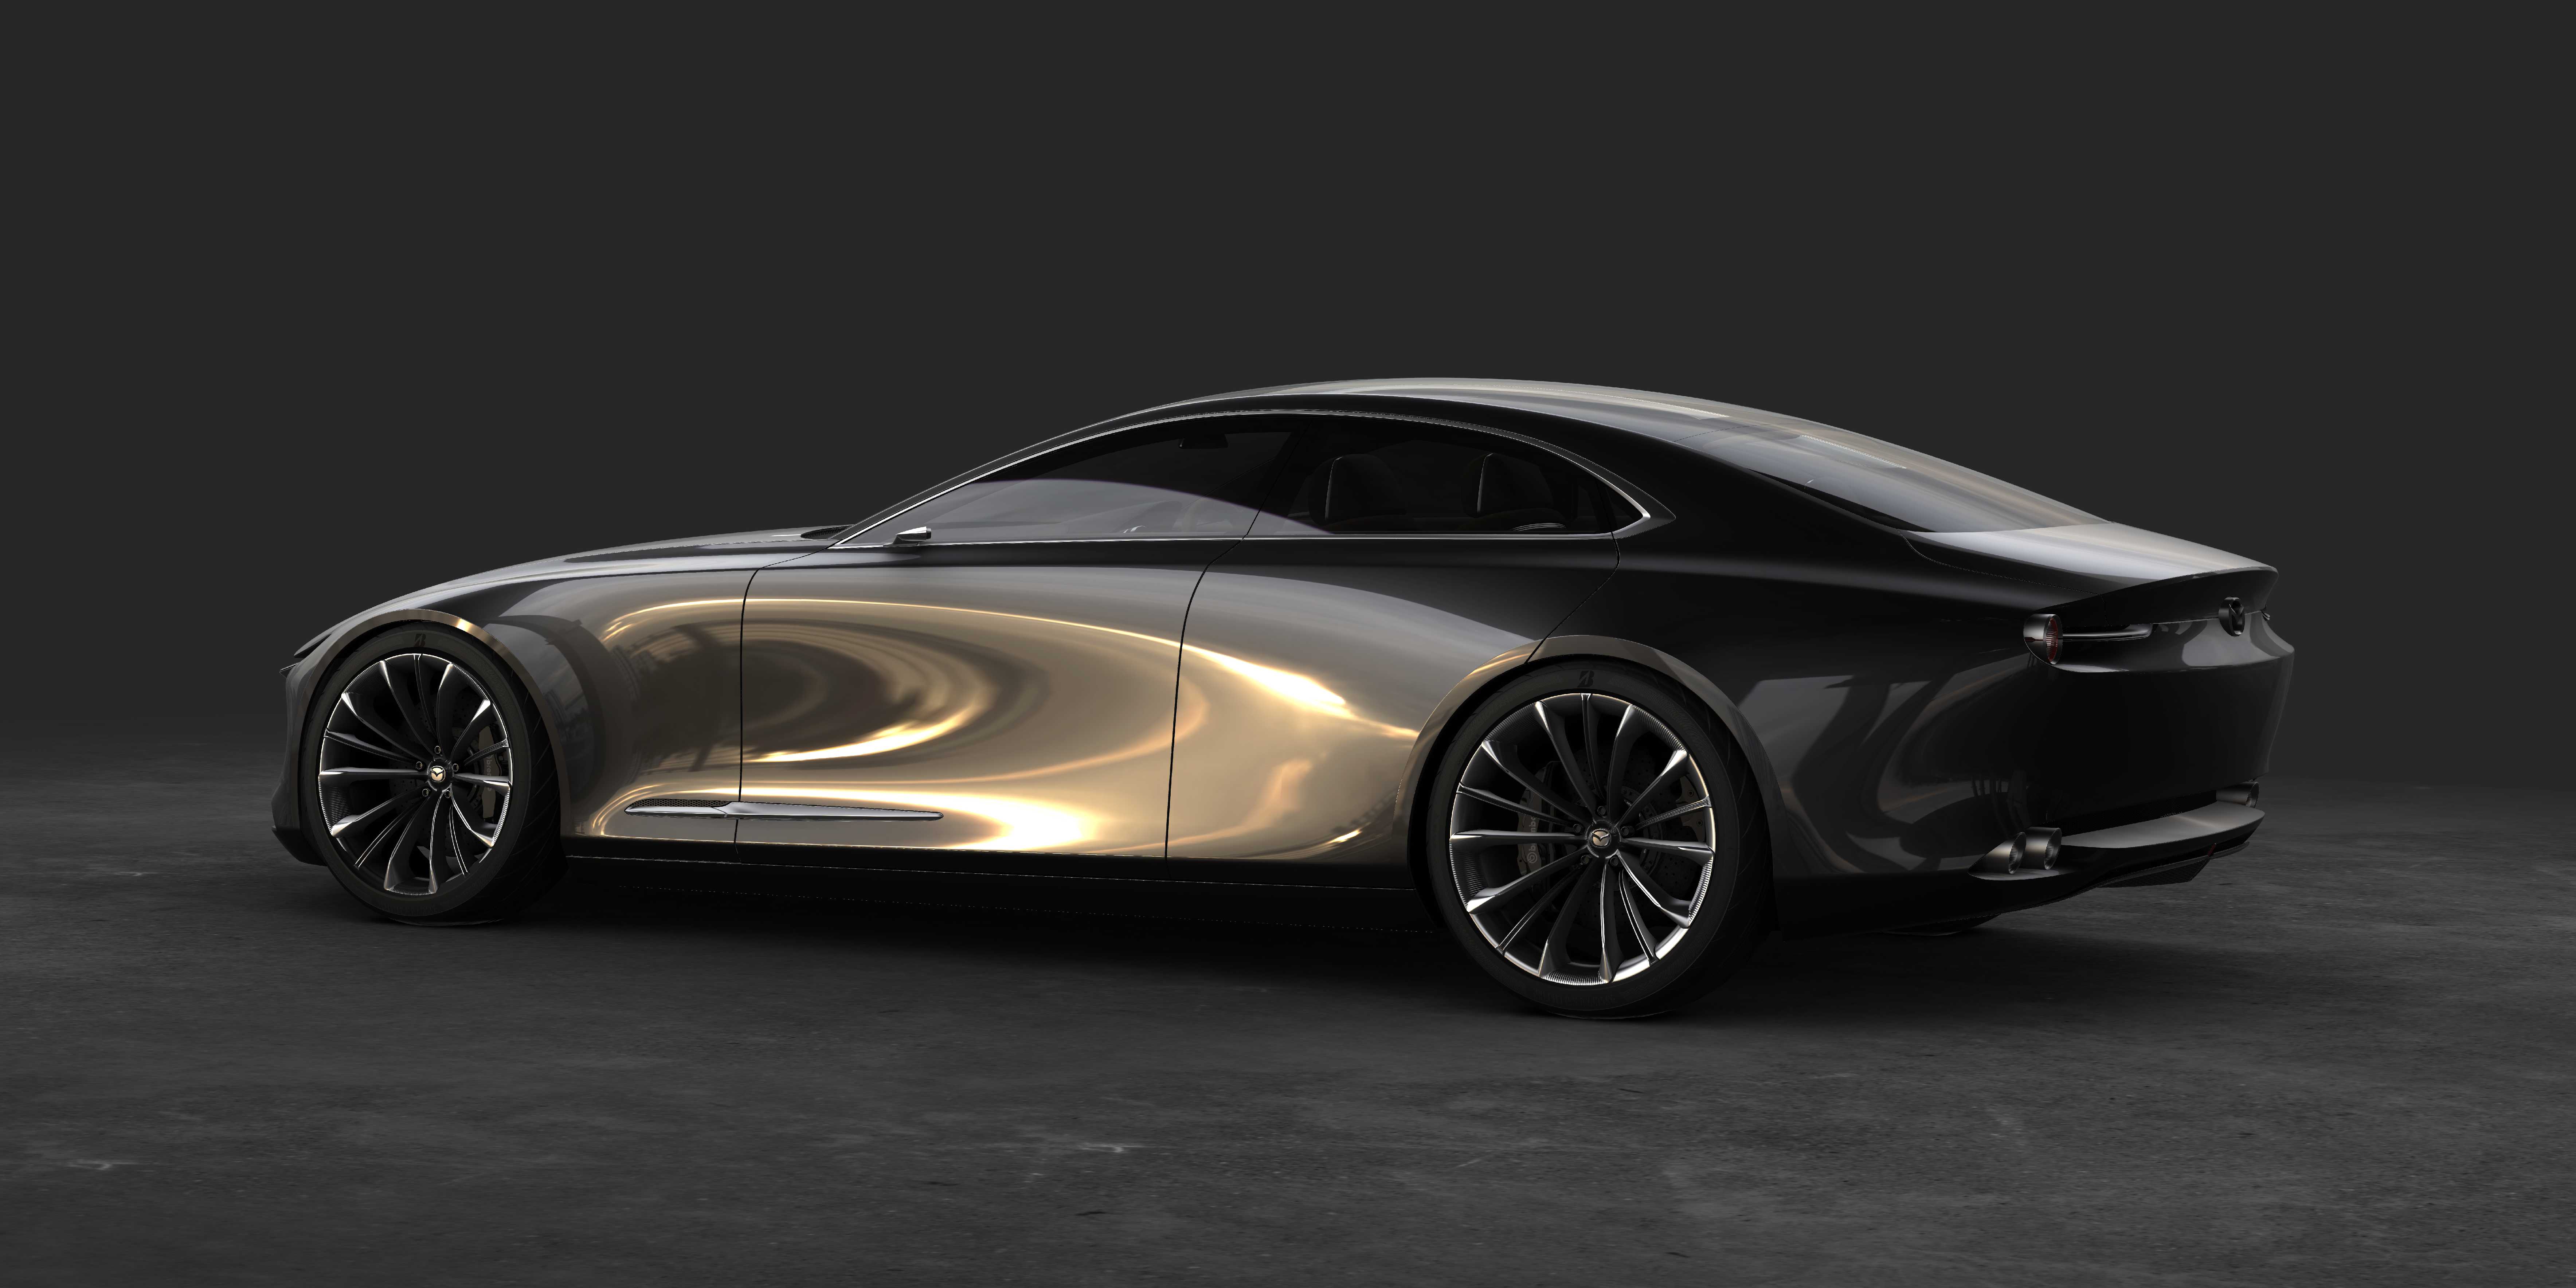 Wystartowała 9. edycja konkursu Mazda Design dla projektantów, architektów i grafików. Pula nagród wynosi 35 tys. zł